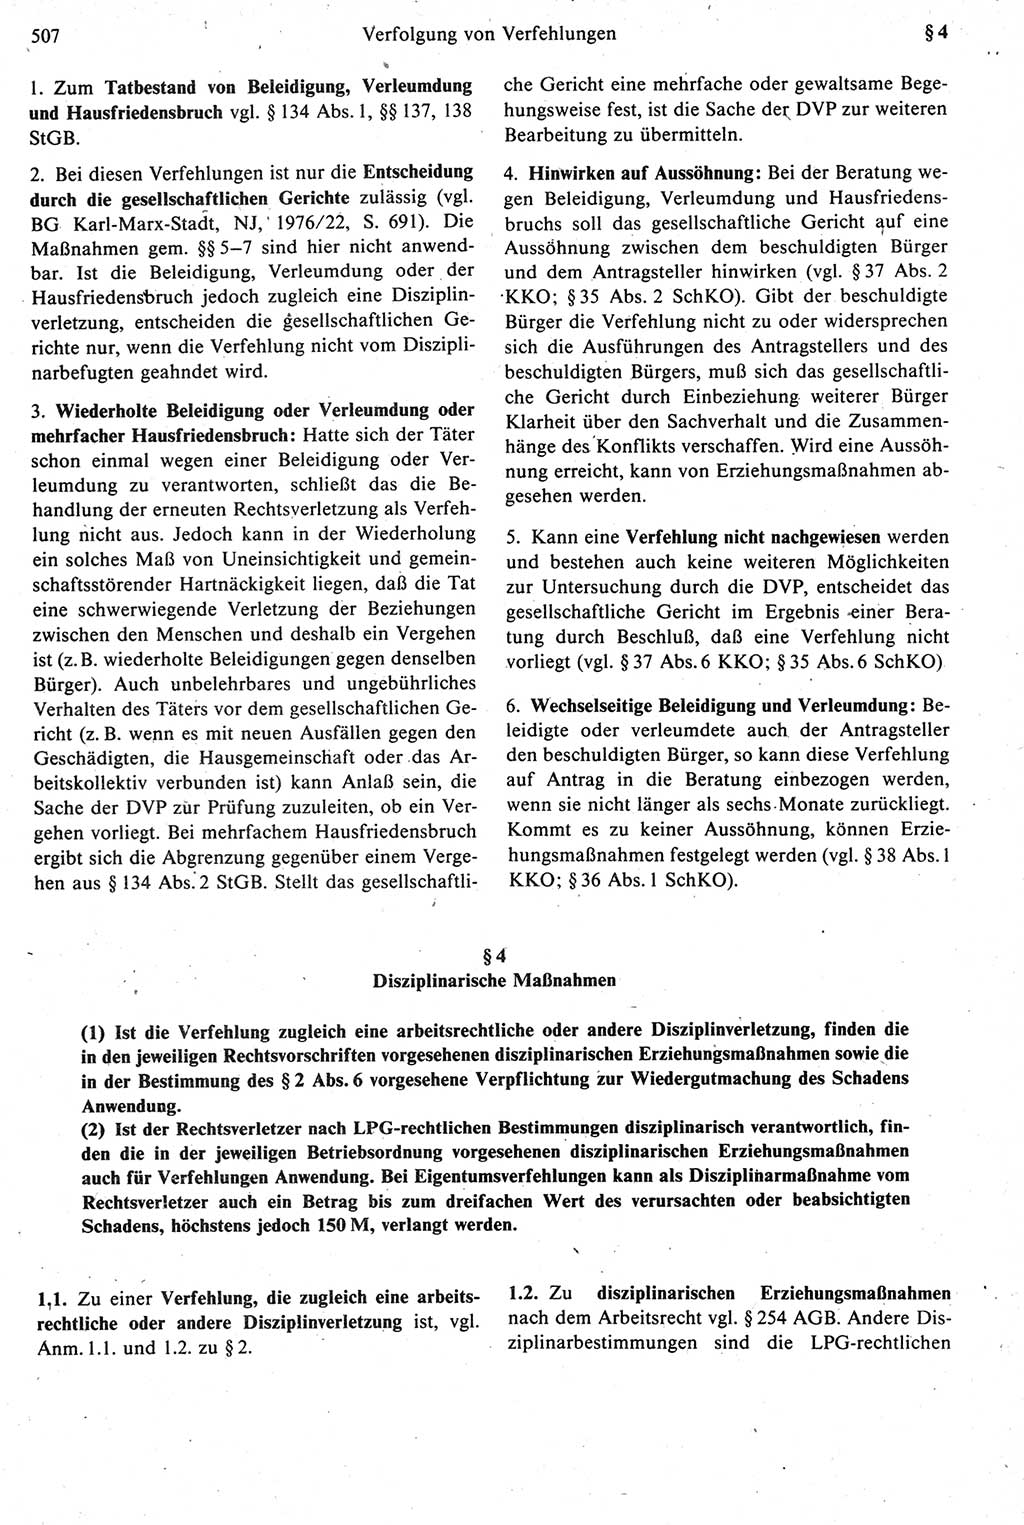 Strafprozeßrecht der DDR [Deutsche Demokratische Republik], Kommentar zur Strafprozeßordnung (StPO) 1987, Seite 507 (Strafprozeßr. DDR Komm. StPO 1987, S. 507)